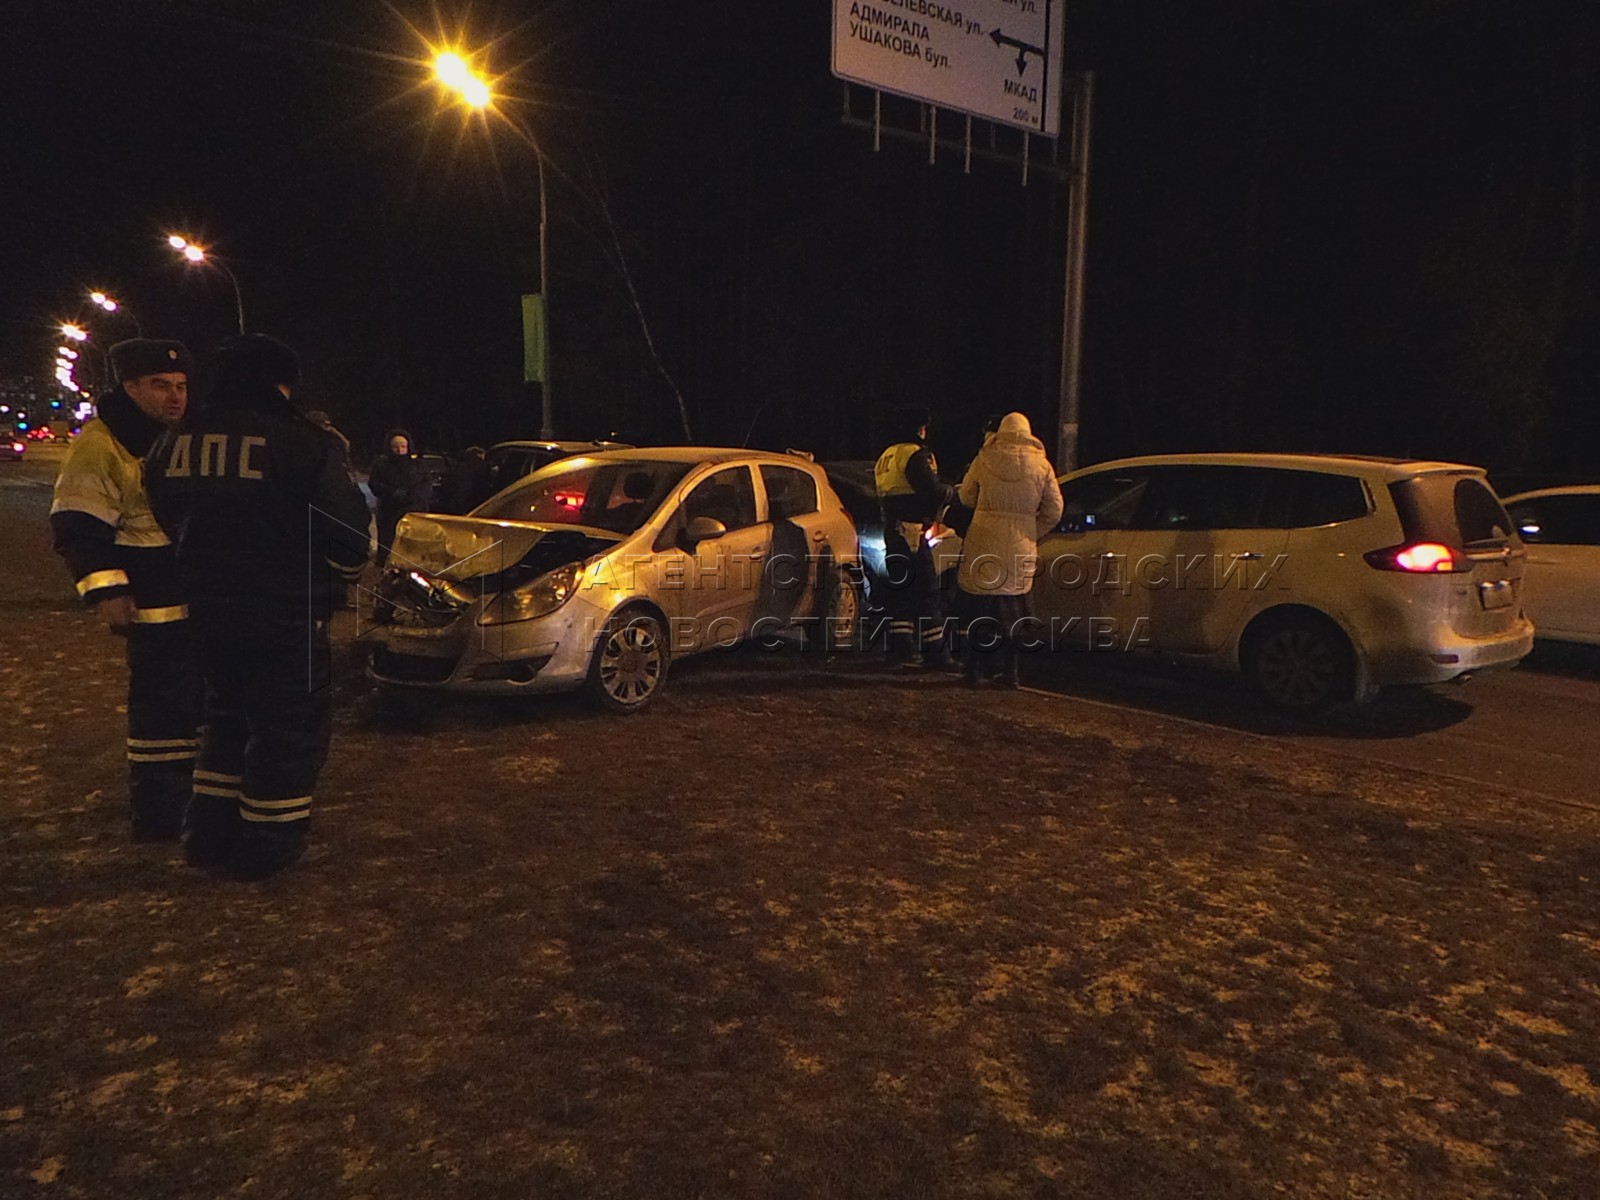 Вечер 22 новости. Происшествие в Бутово вчера.